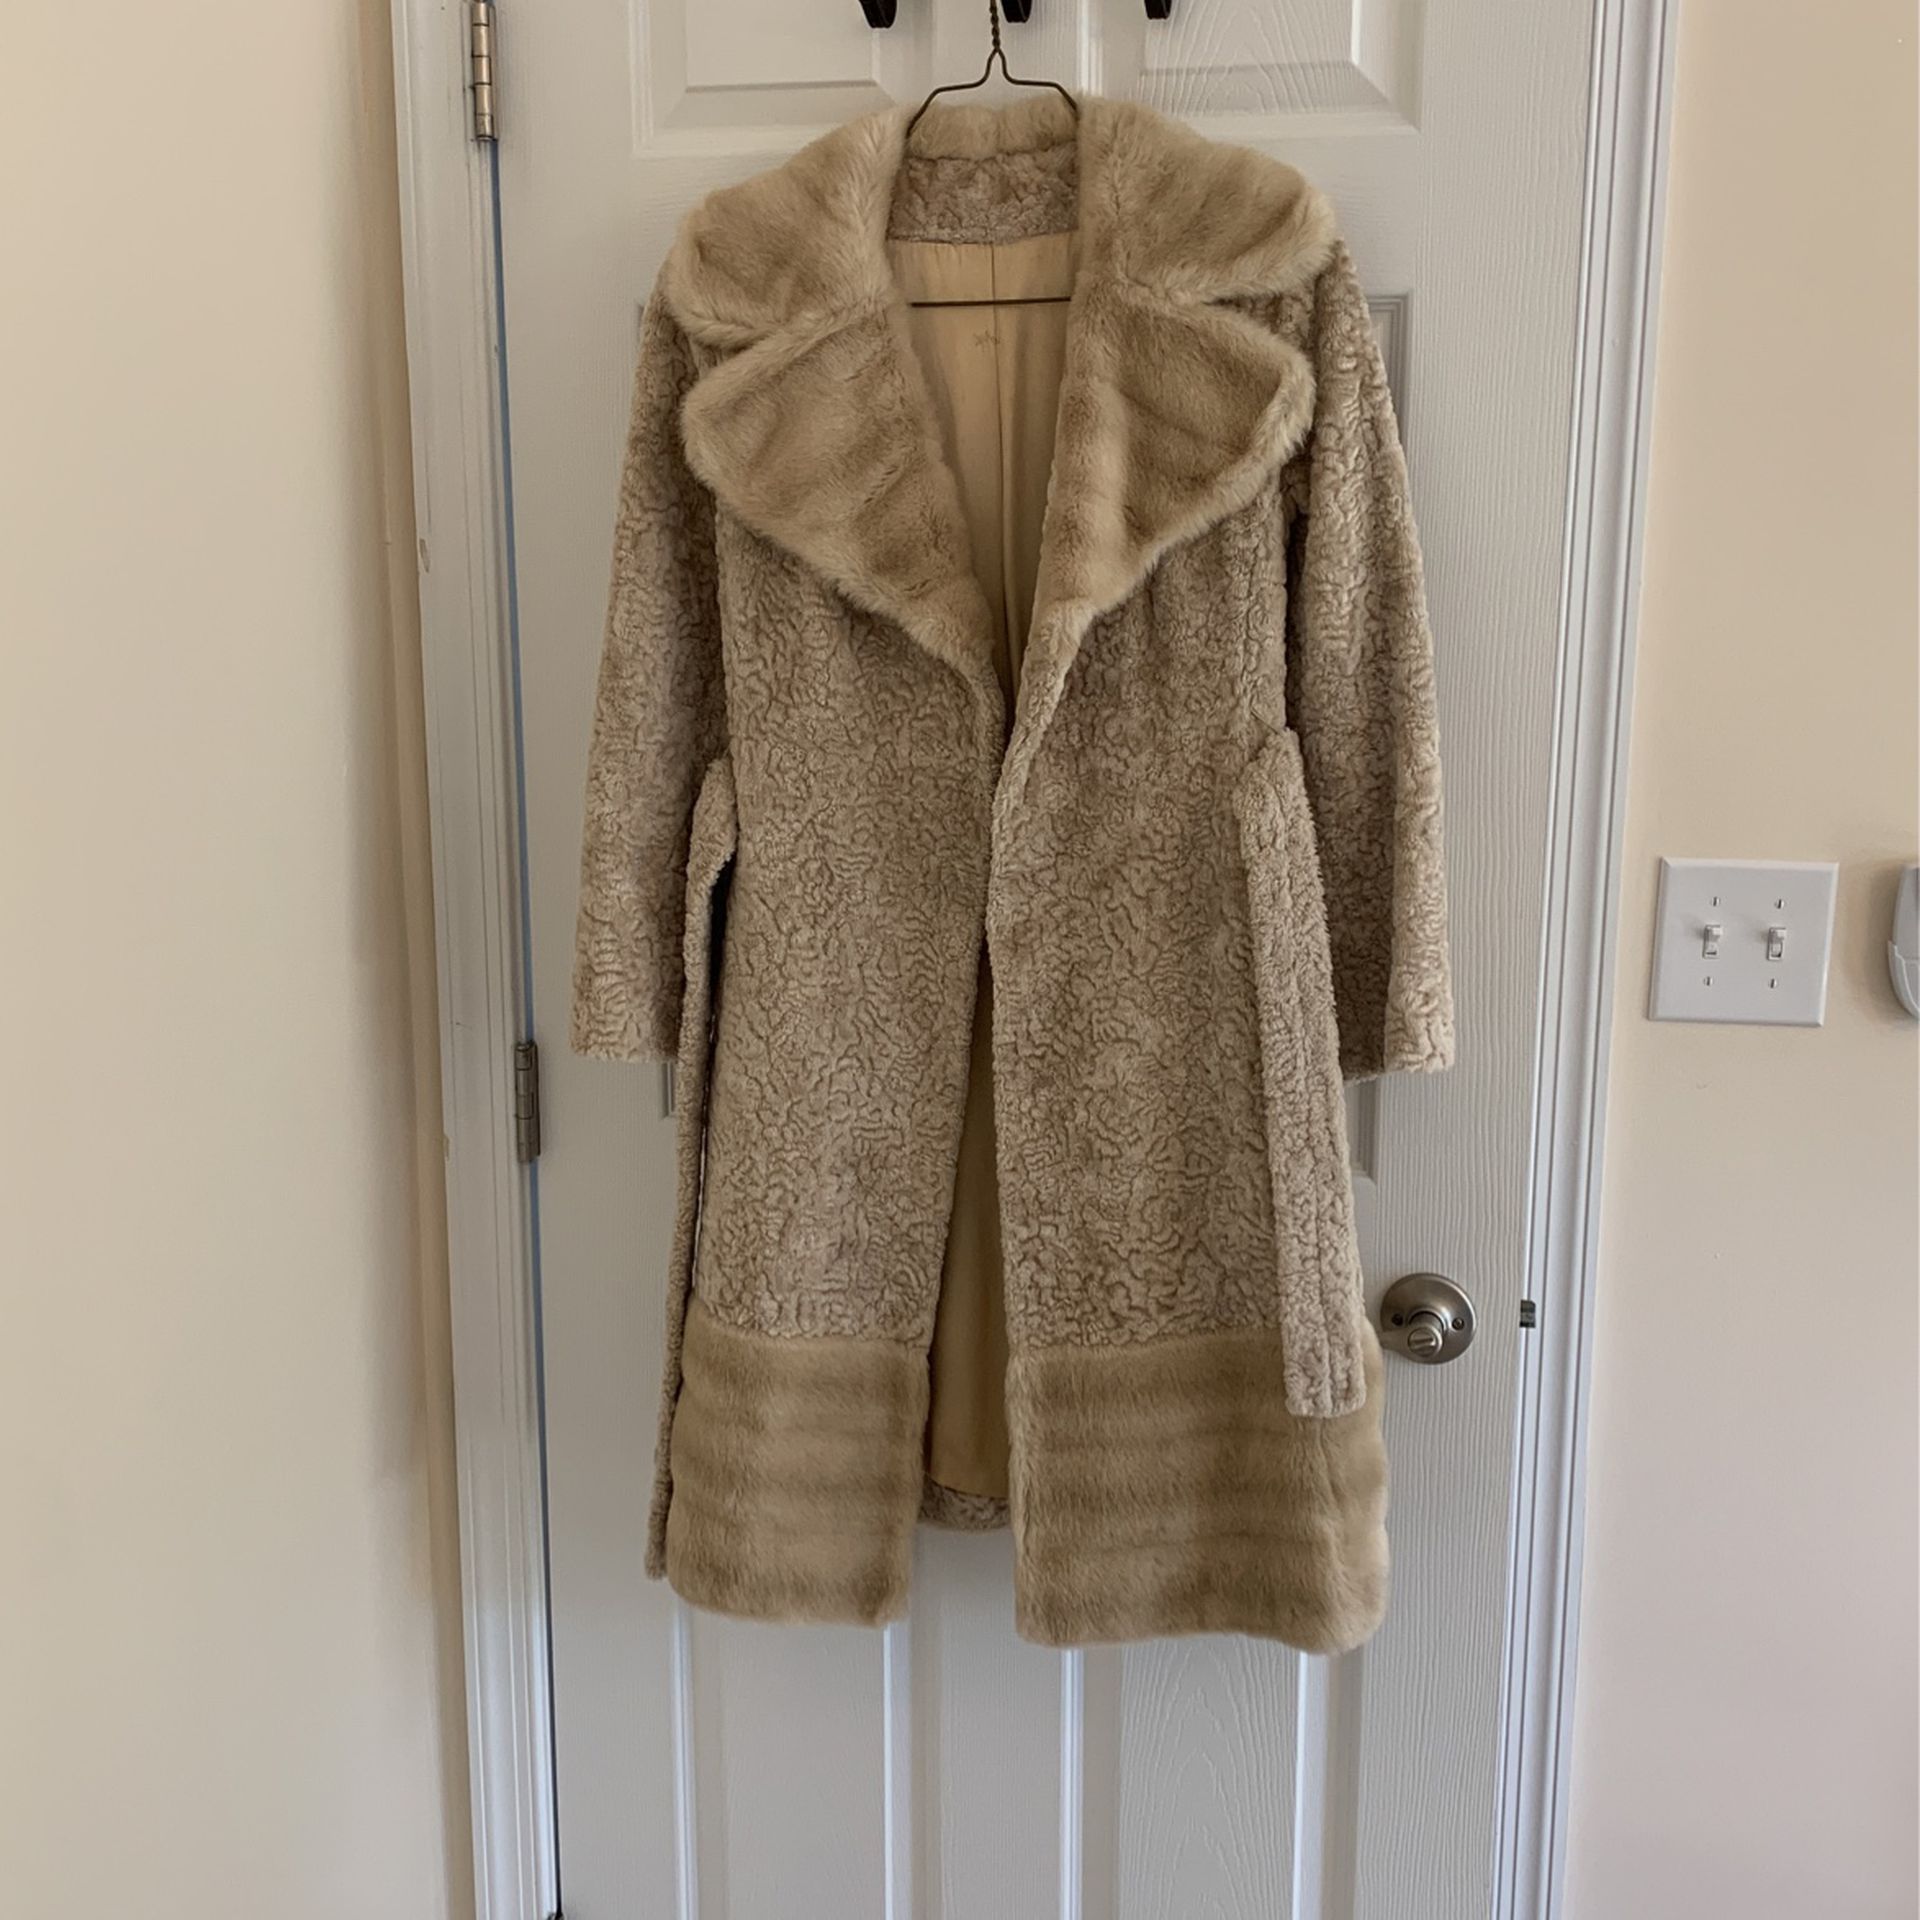 Ladie’s Vintage Winter Fur Coat